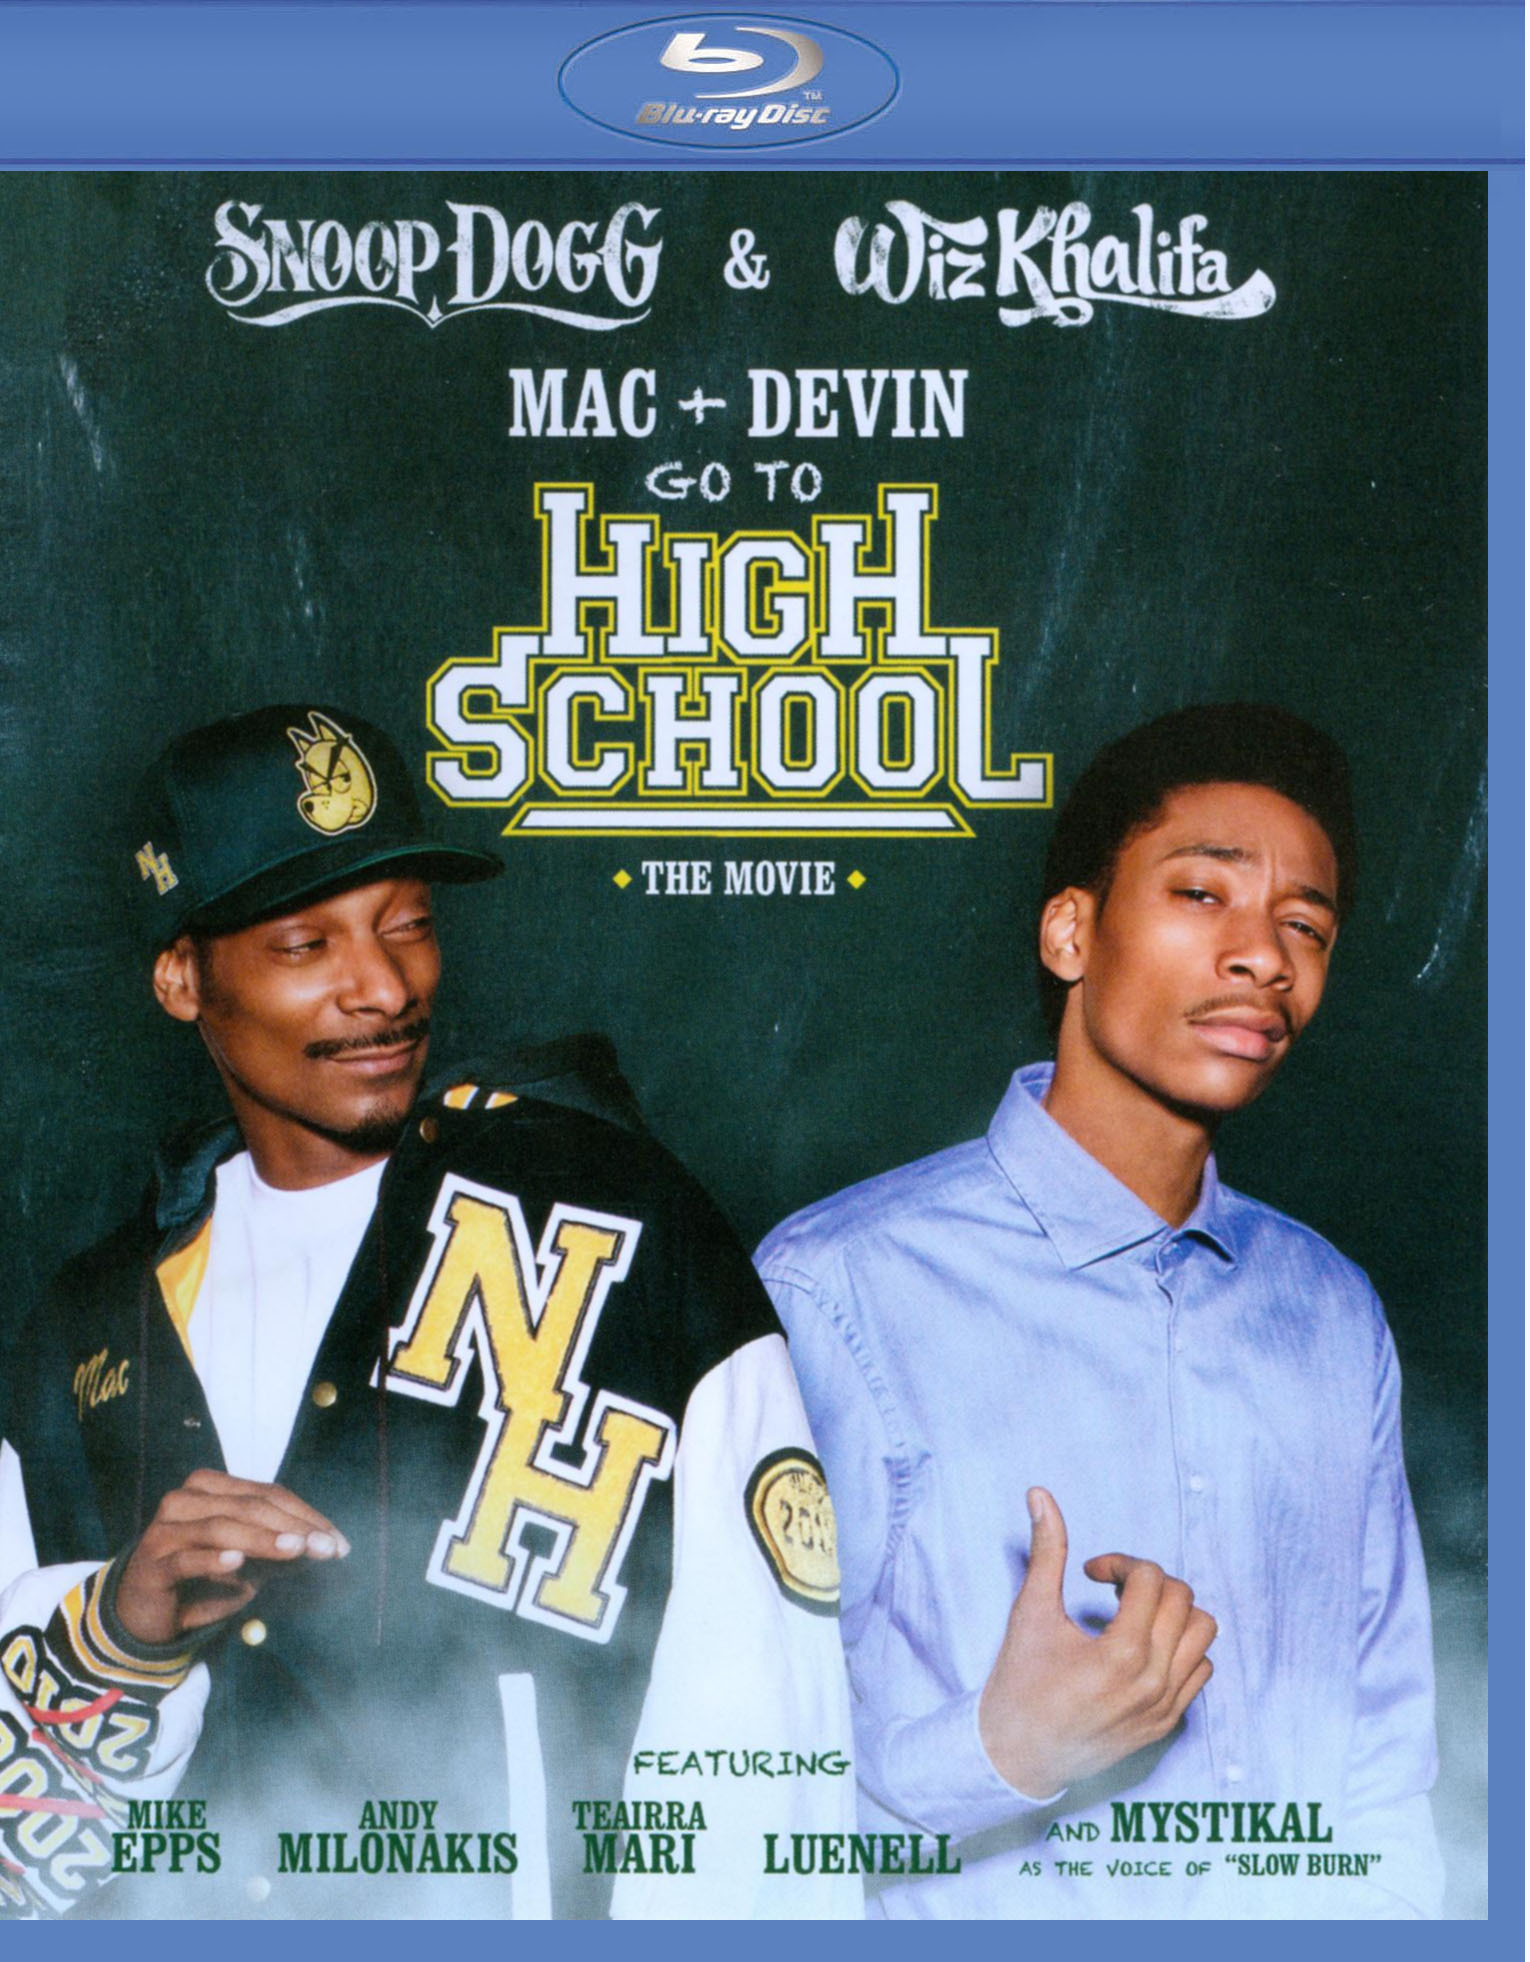 Mac + Devin Go to High School [Blu-ray] [2012] - Buy